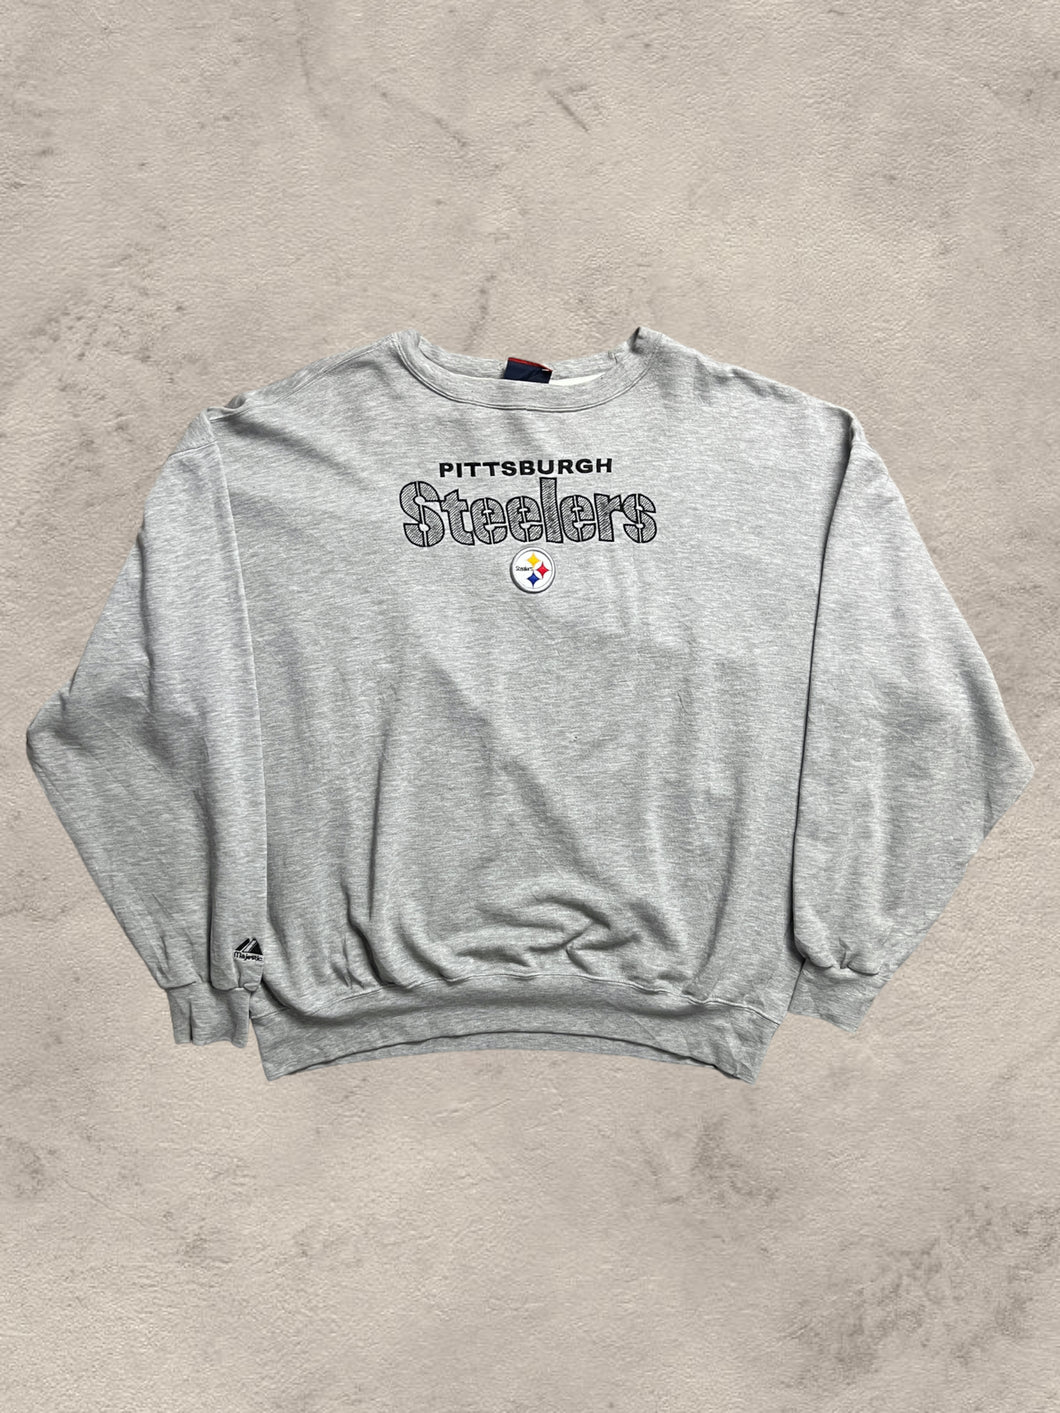 Vintage Pittsburgh Steelers Sweatshirt - XL